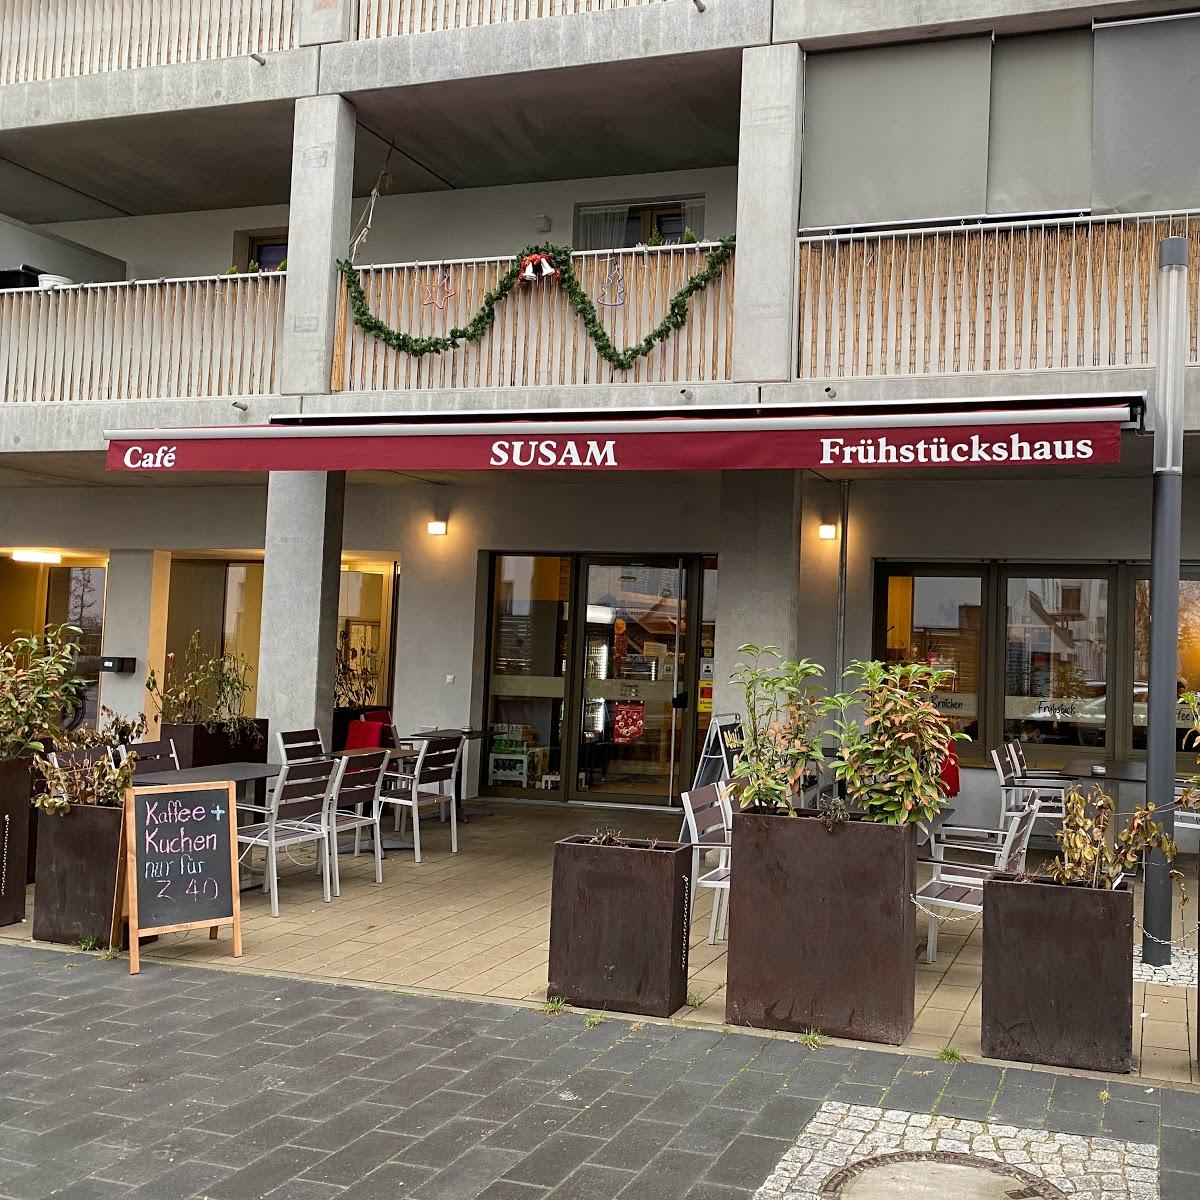 Restaurant "Susam Café und Frühstückshaus" in Berlin